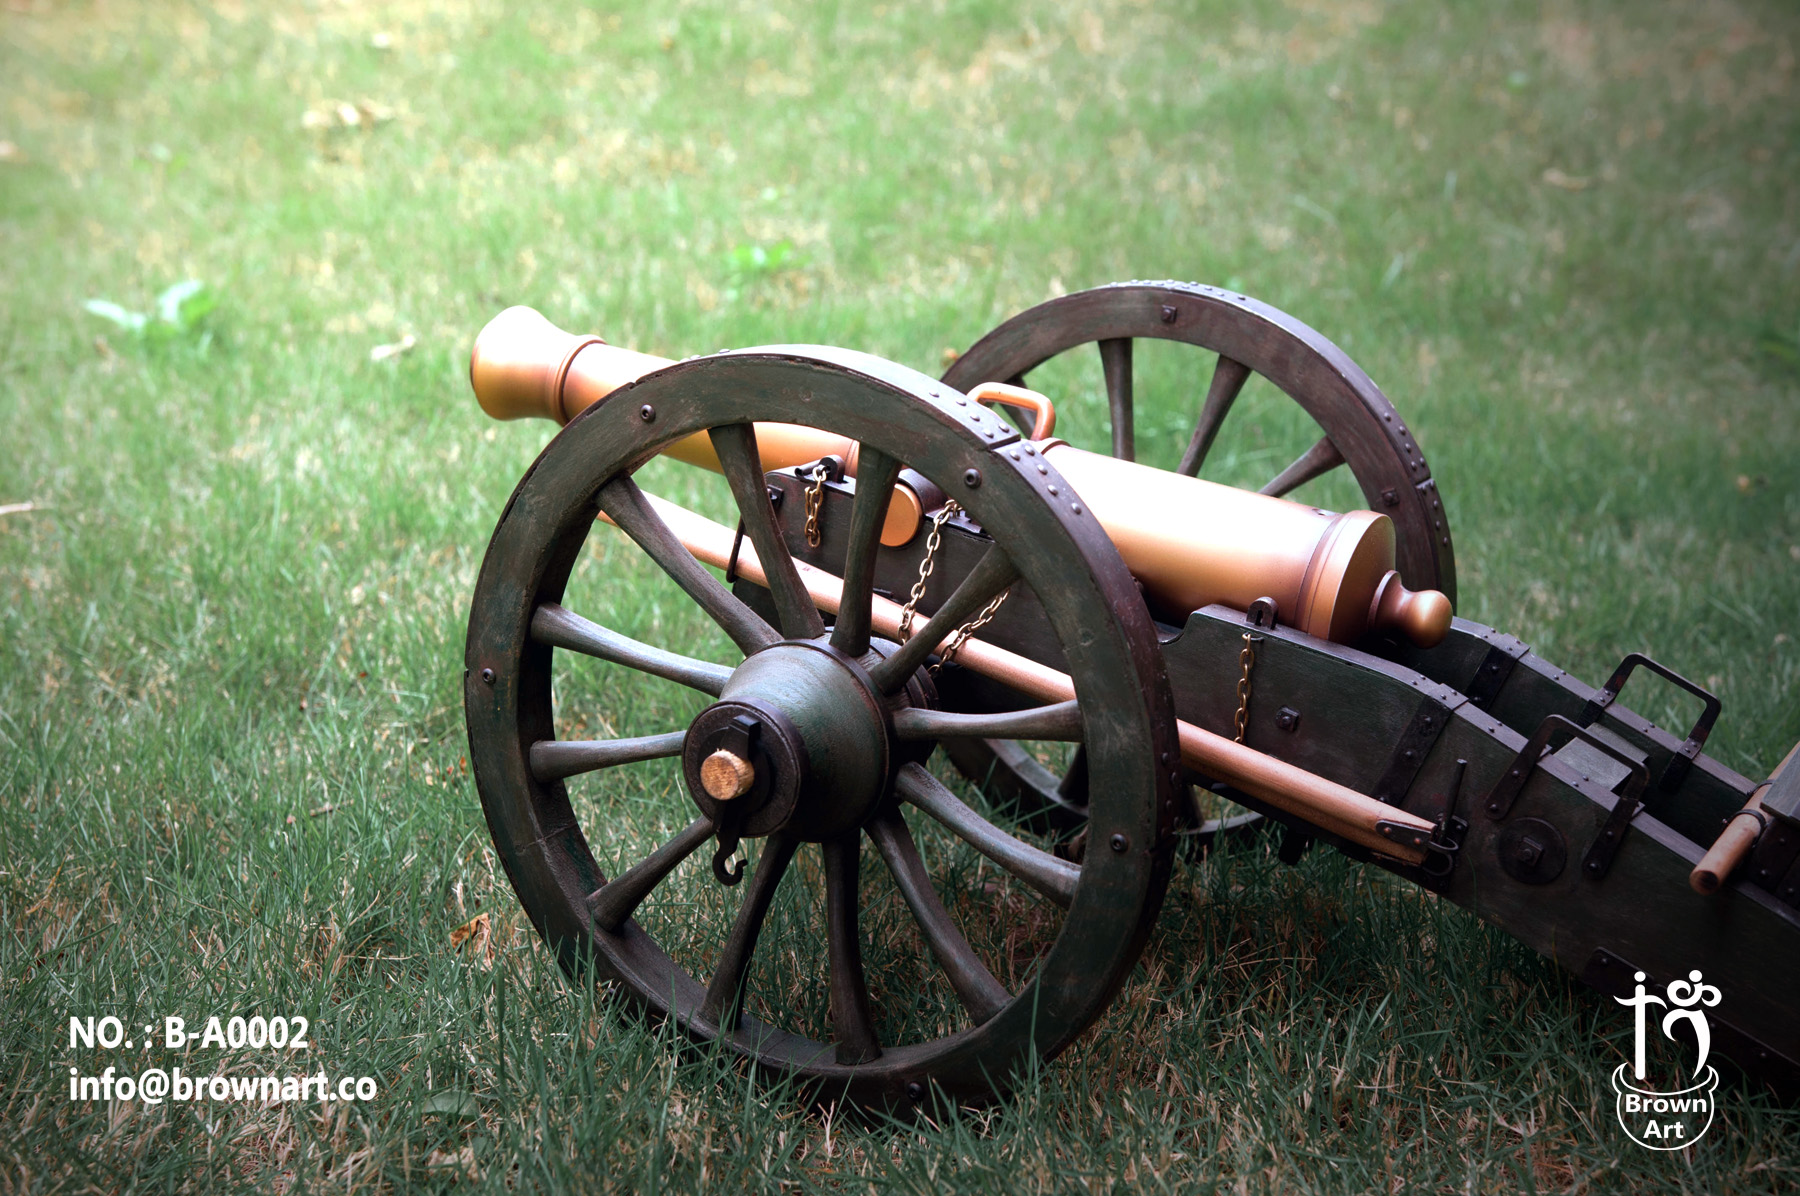 拿破仑时期的火炮图片